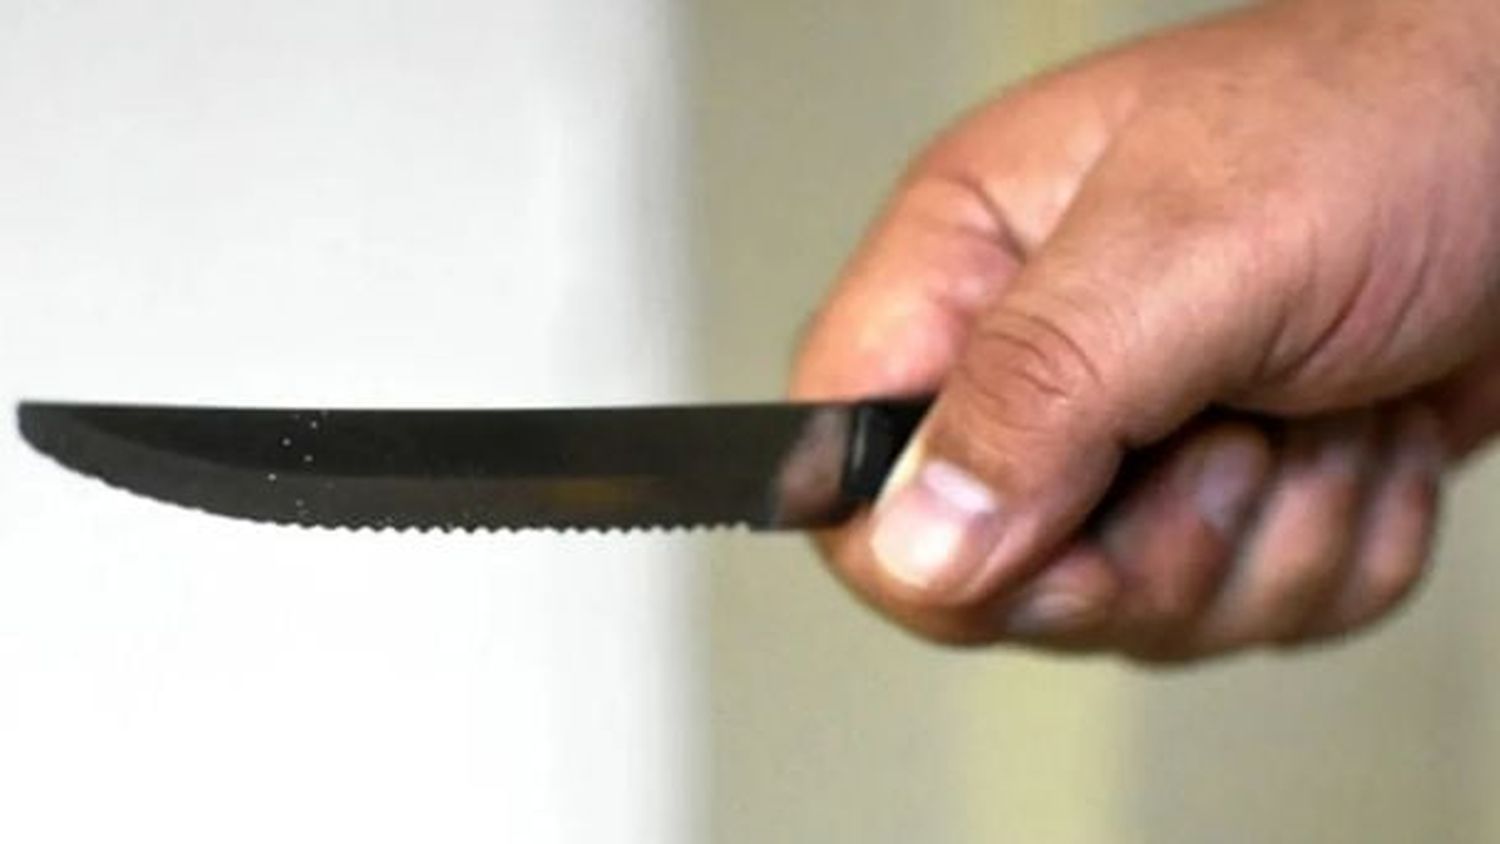 Cuchillo similar al del ataque